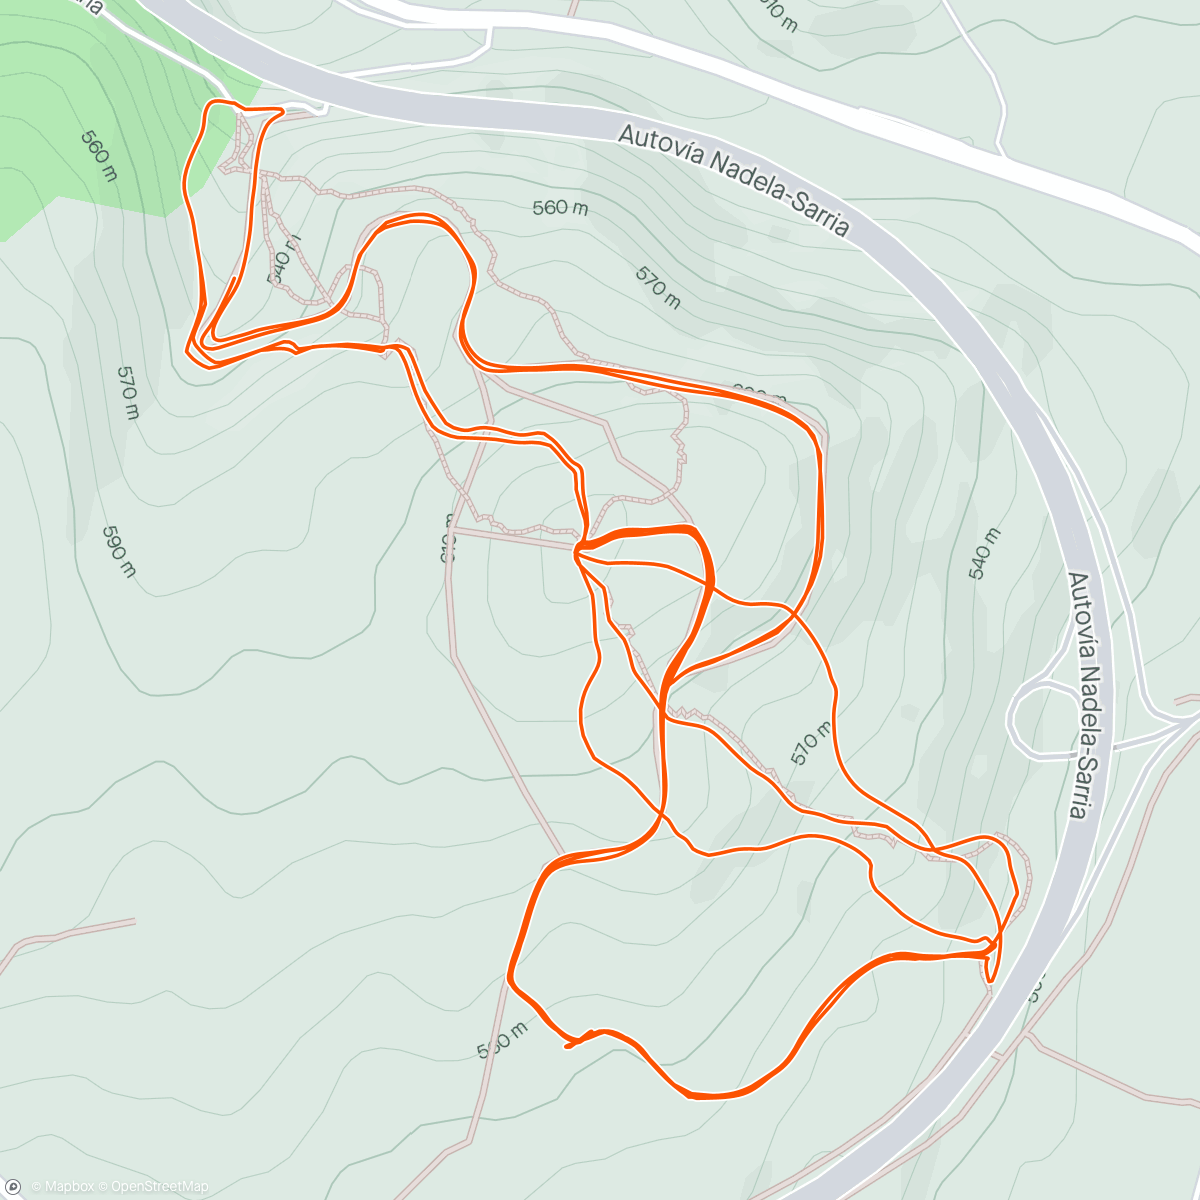 「Bicicleta de montaña a la hora del almuerzo」活動的地圖